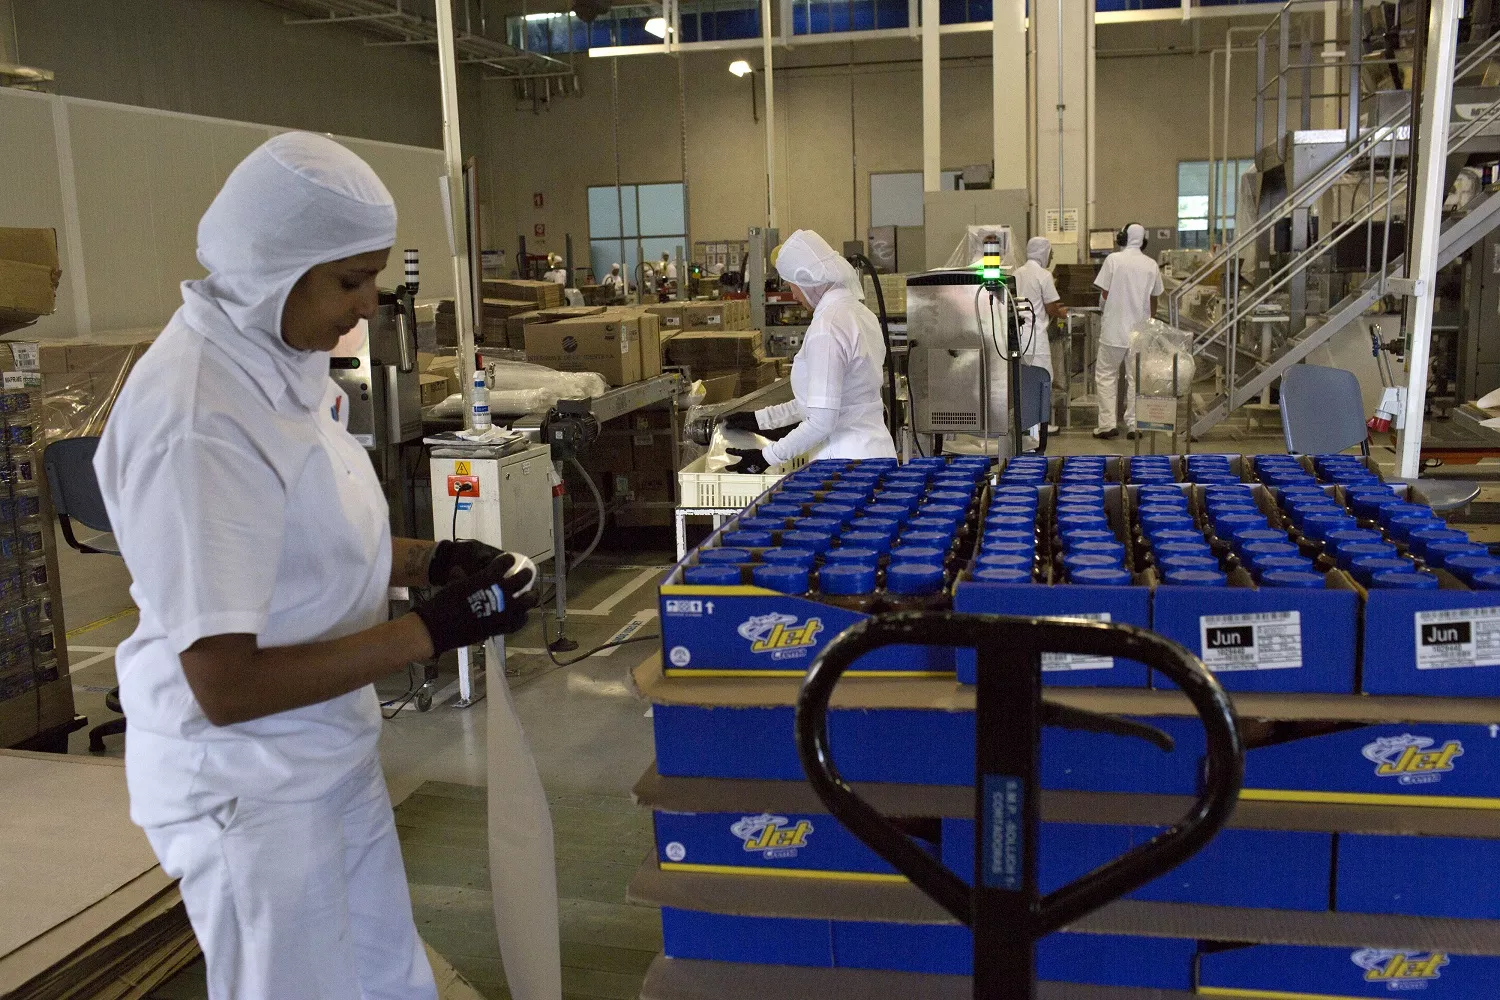 Fábrica de chocolatinas Jet, del grupo Nutresa ilustra nota sobre quiénes son los dueños de esa empresa